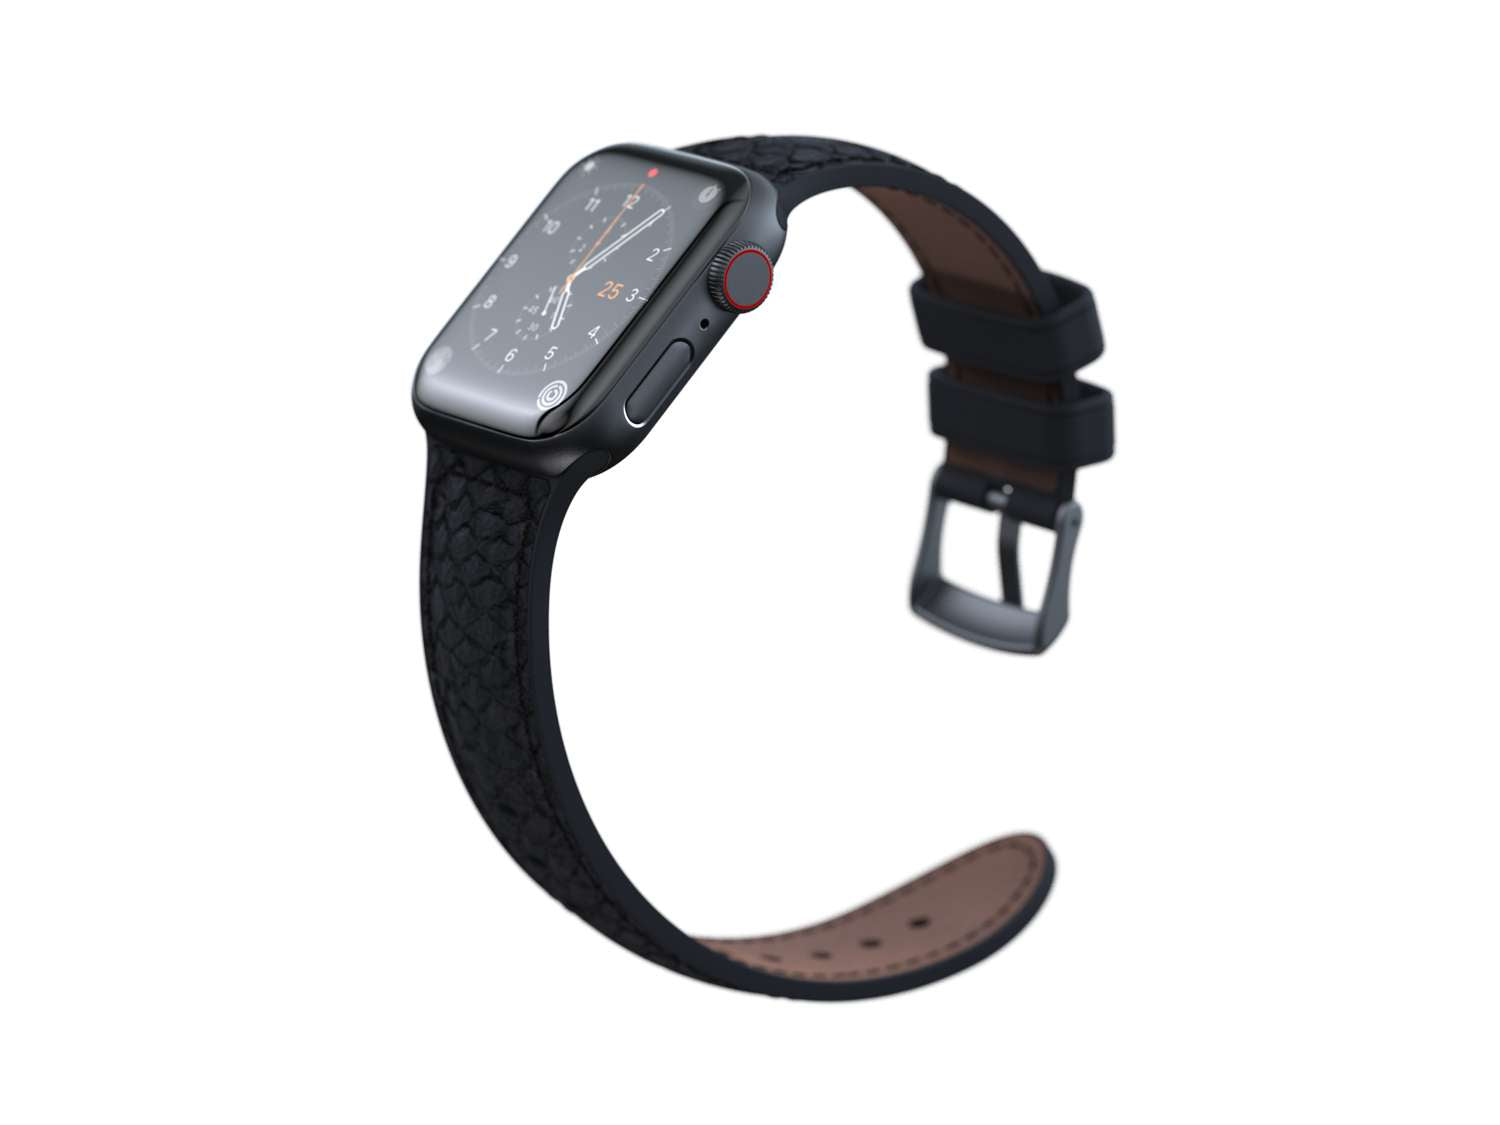 Salmon Leather Watch Strap - Vindur|Dark Grey